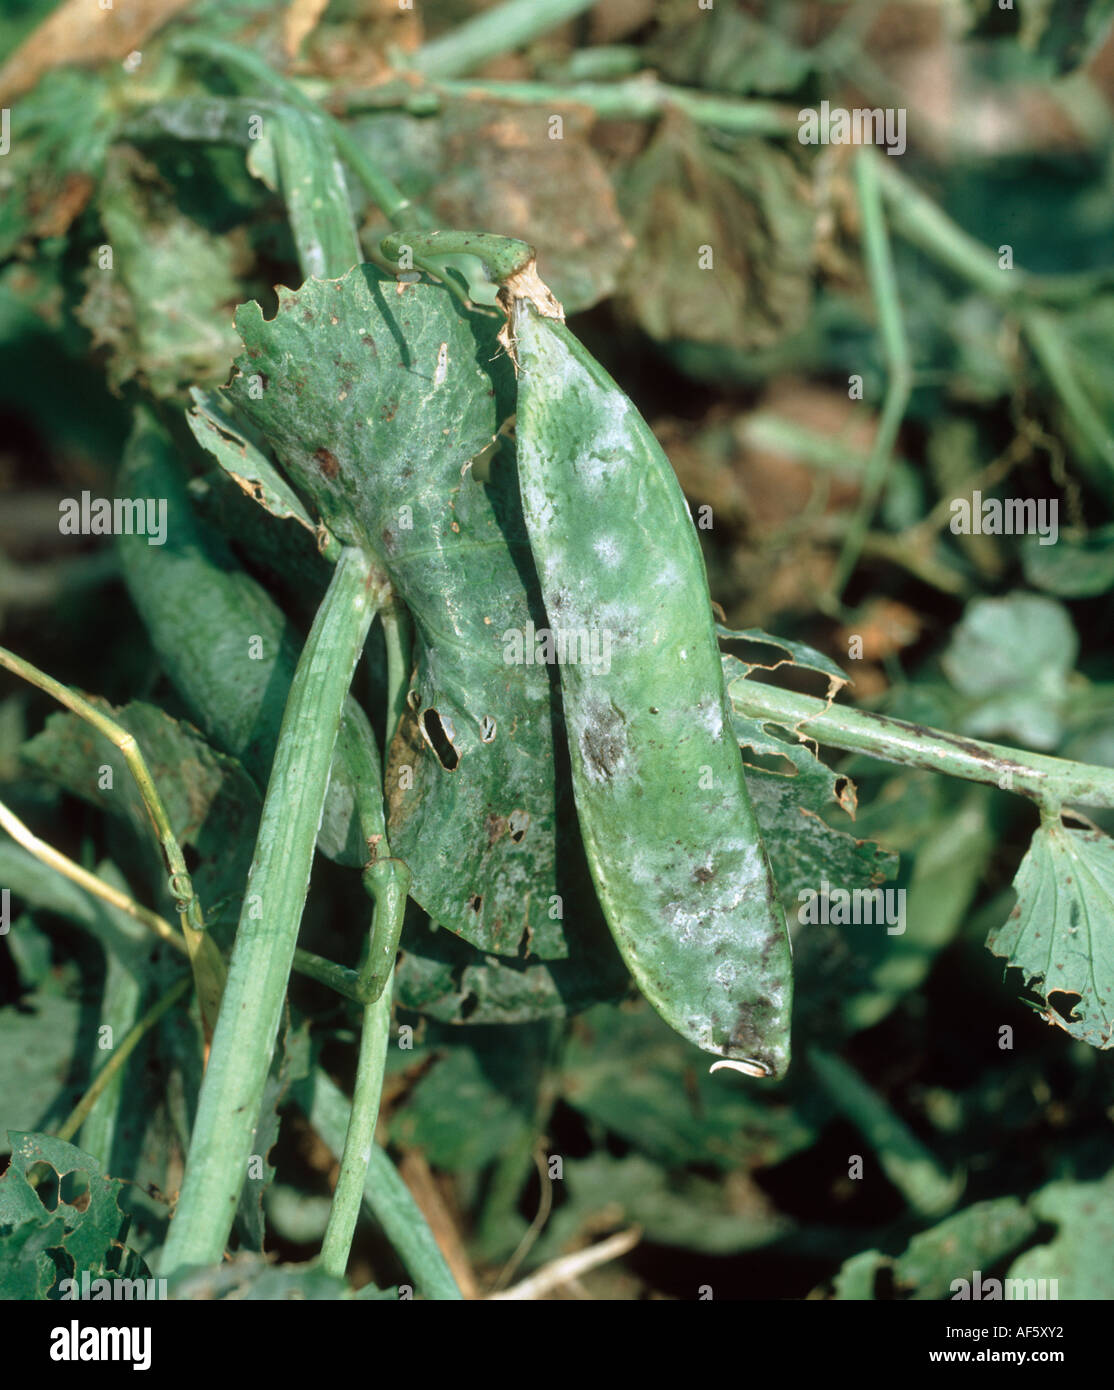 Powdery mildew (Erysiphe pisi) pod infection on a pea plant Stock Photo